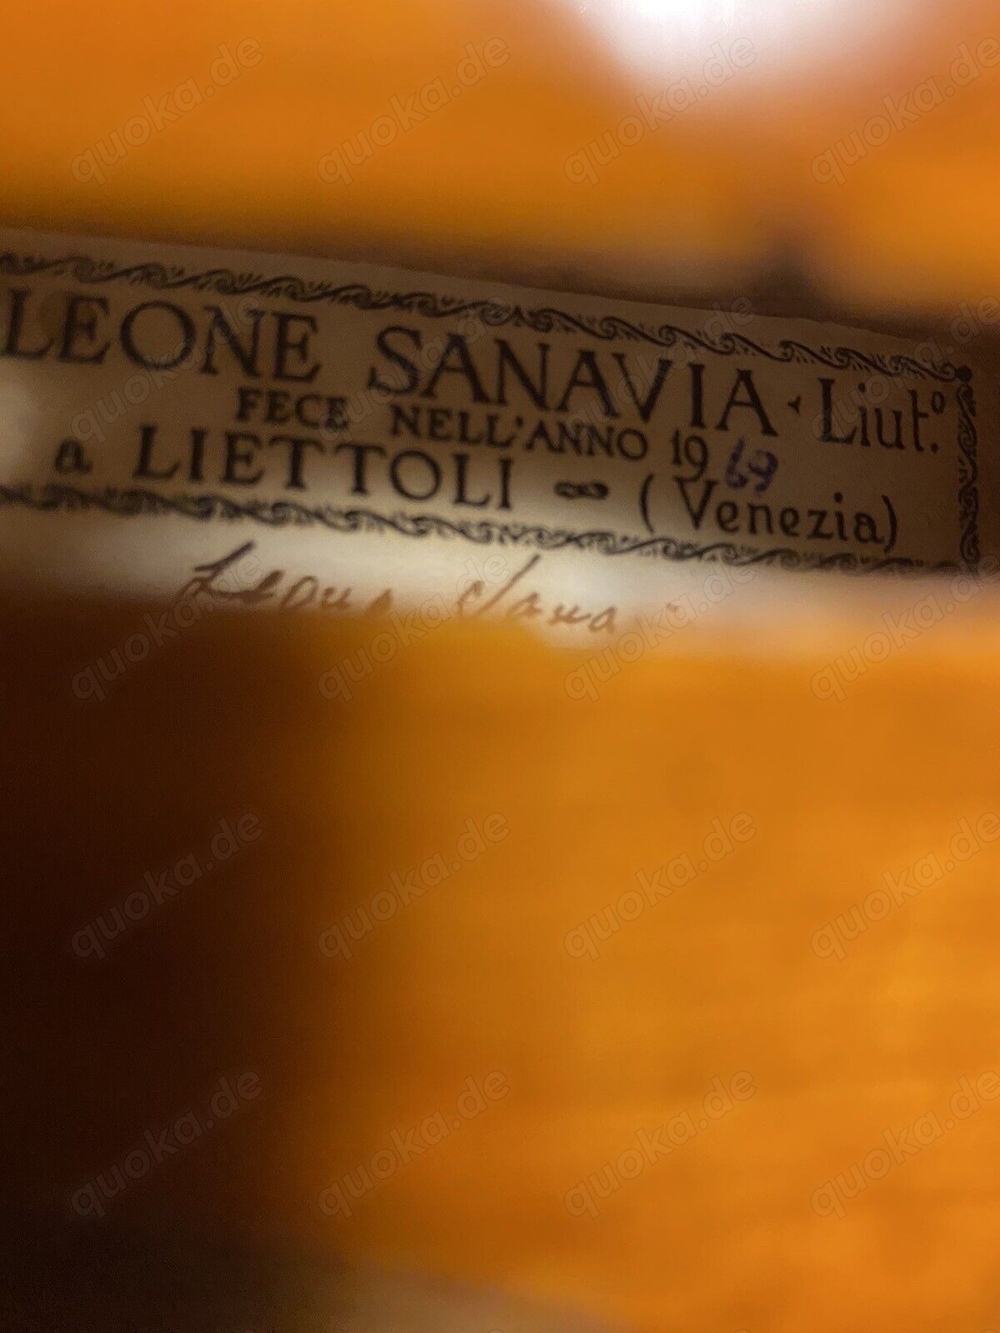 Sehr Schöne Alte Meister Violine Geige mit Inschrift Leone Sanavia 1969 Venezia